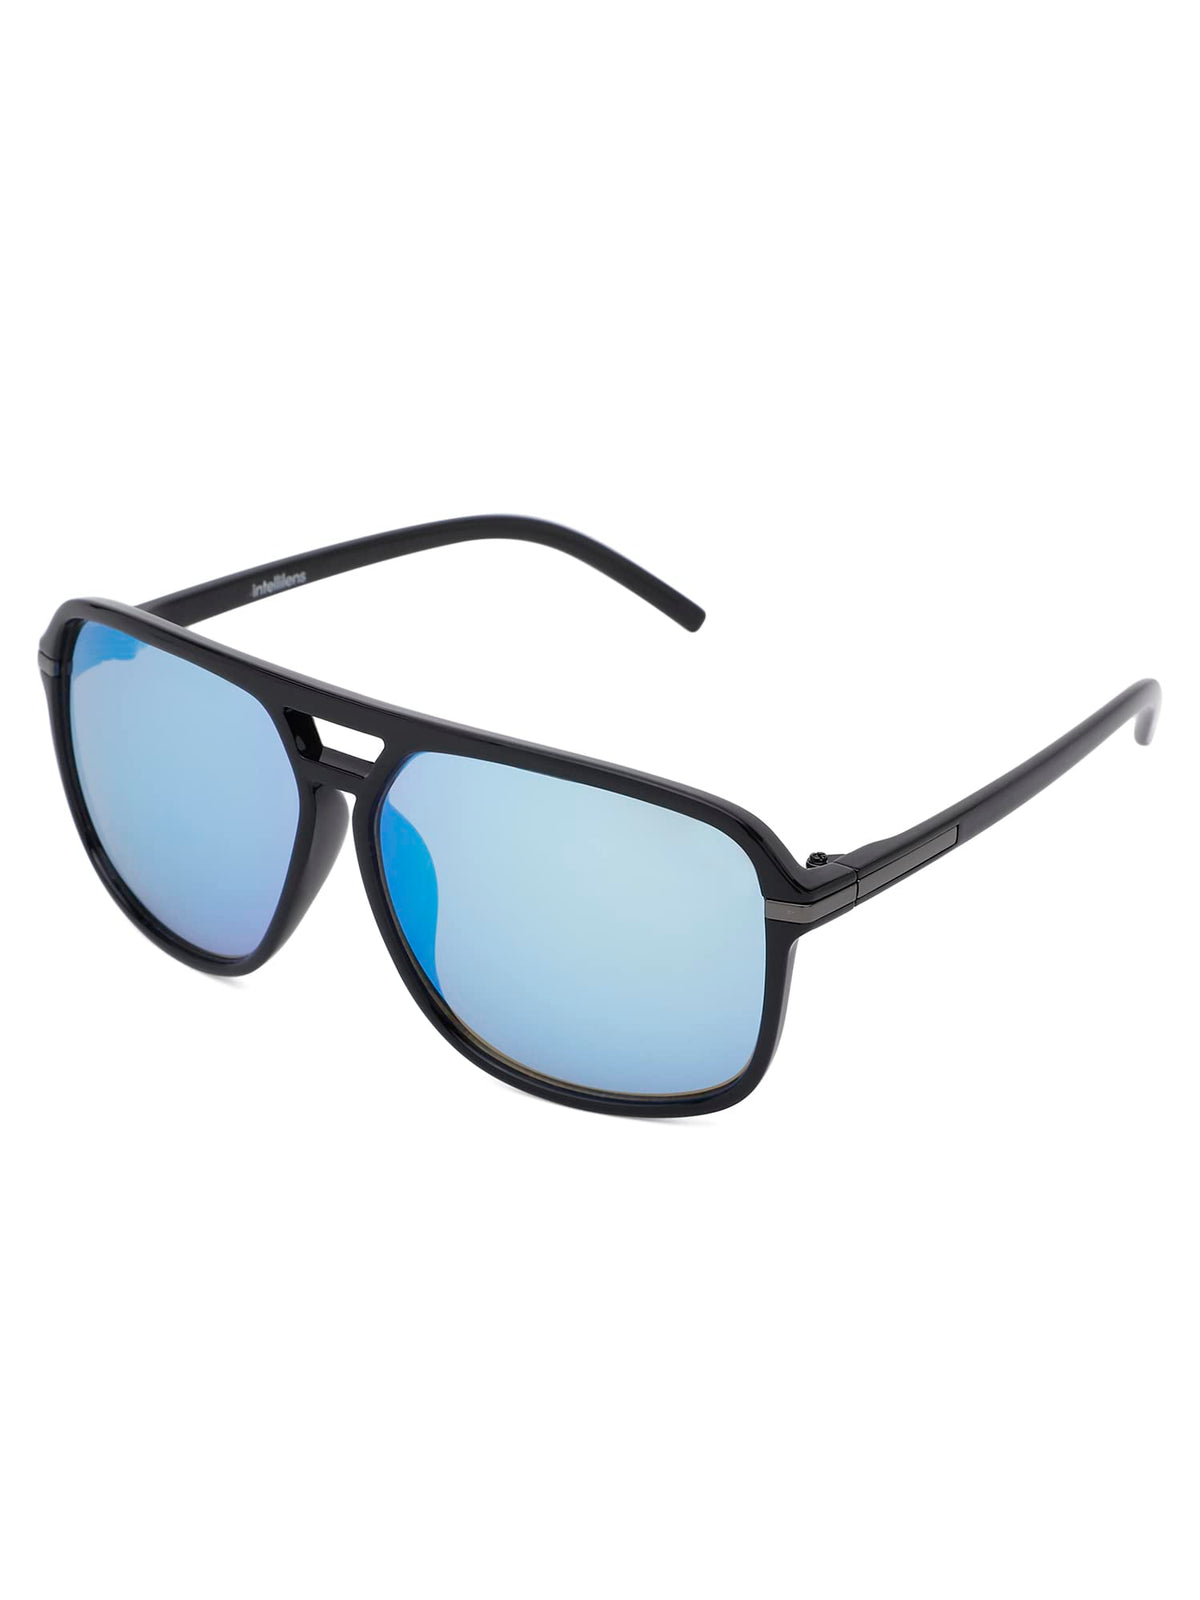 Intellilens Pilot UV Protected Sunglasses For Men & Women|Goggles for Men & Women (Blue) (58-17-132) - Pack of 1